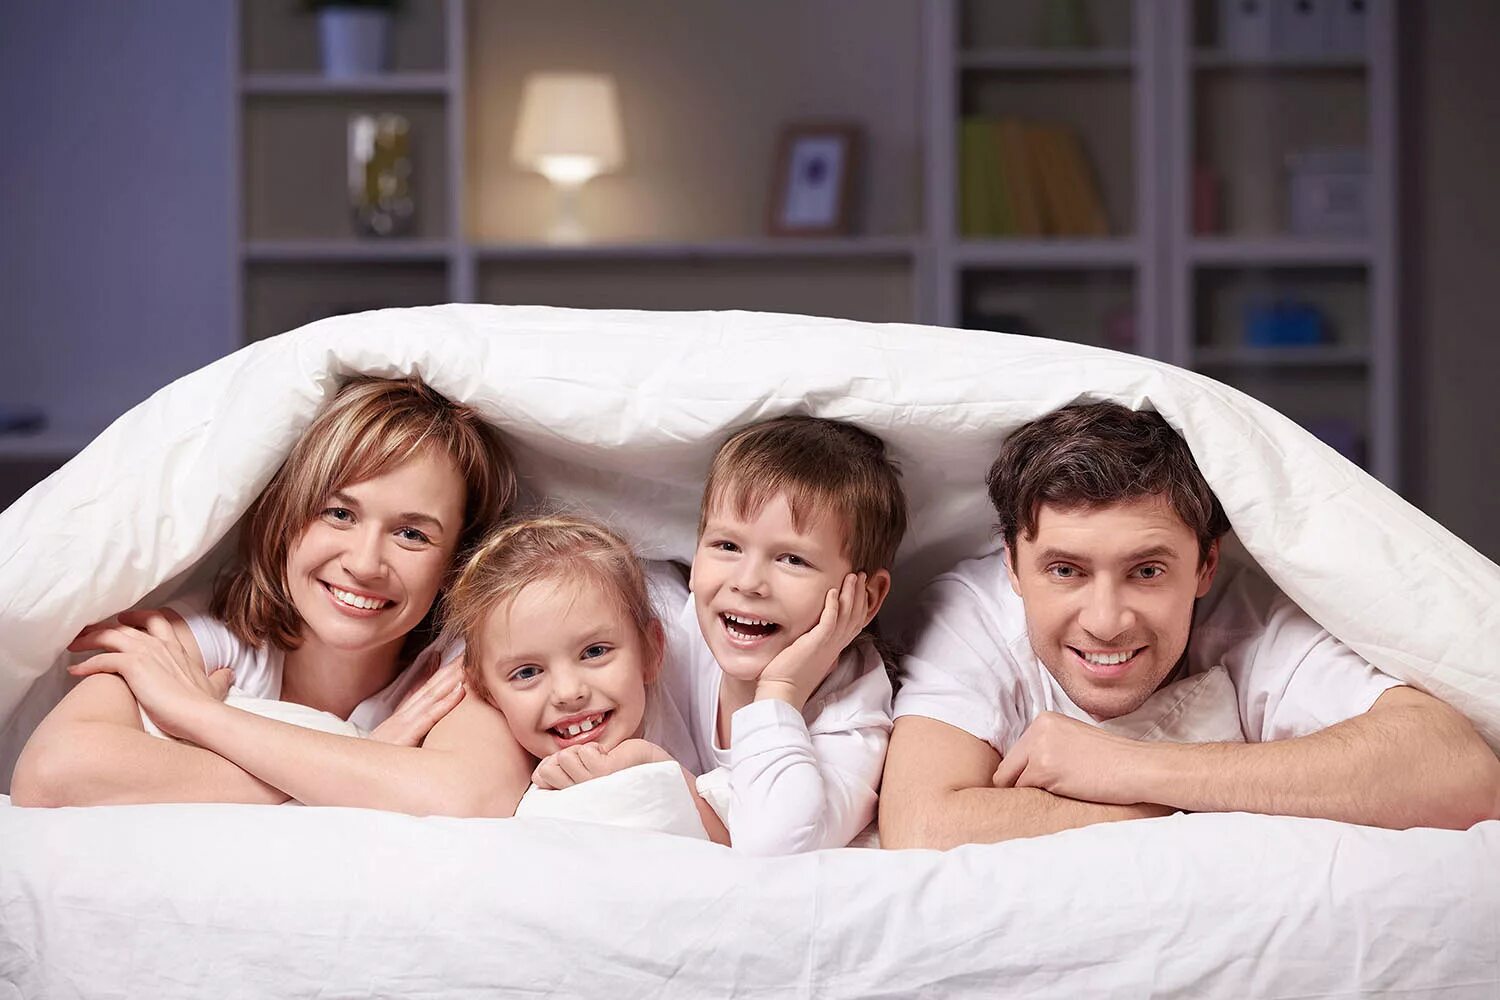 Семейная фотосессия. Семьи с детьми в гостинице. Семья на кровати. Счастливая семья в постели. Решили сделать семейное фото но в итоге